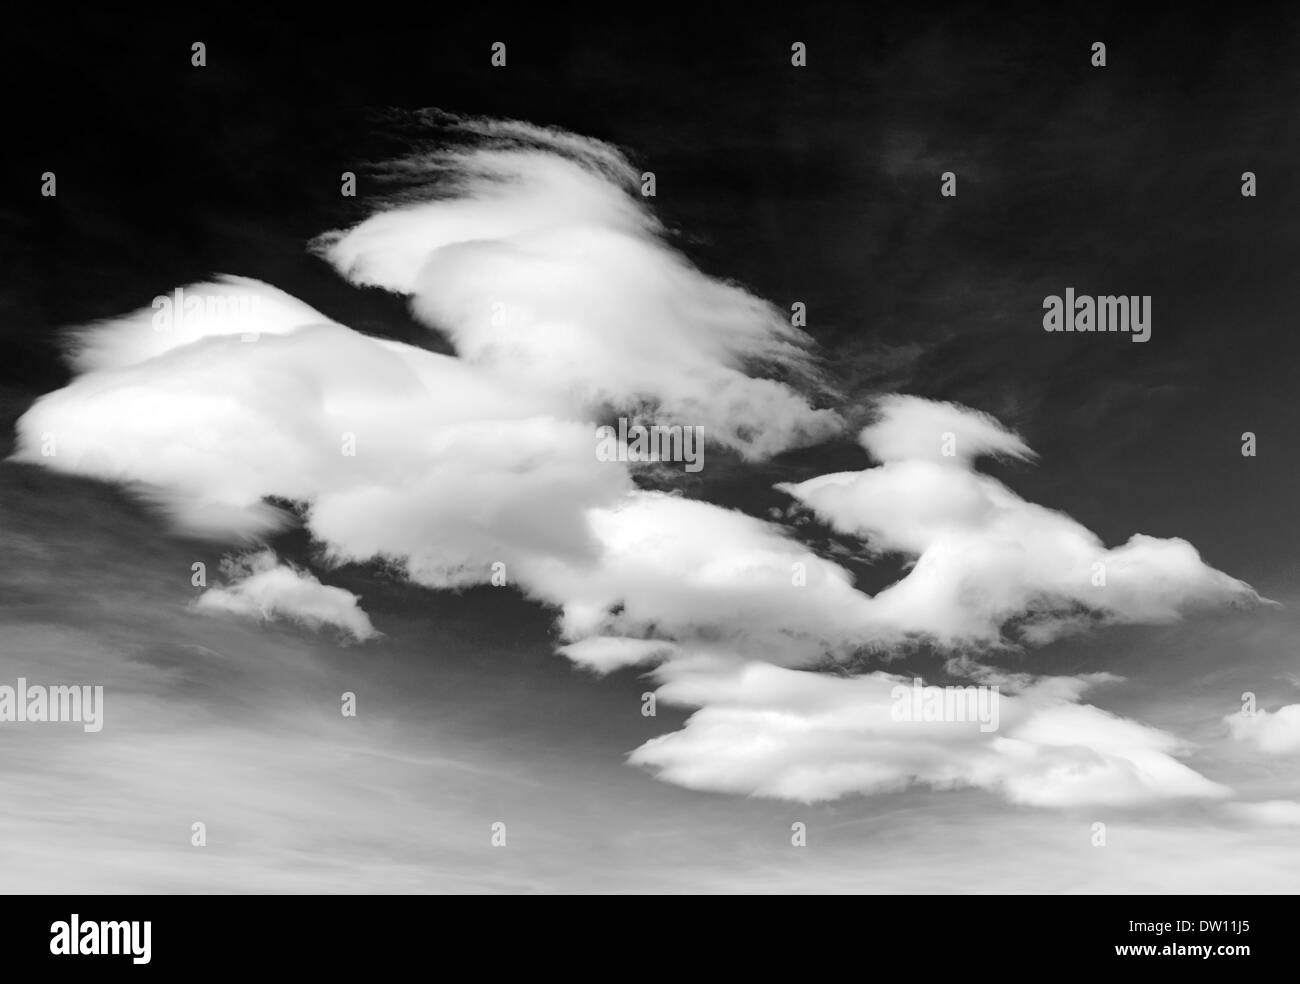 Vue en noir & blanc de blanc vaporeux nuages contre Colorado clear sky Banque D'Images